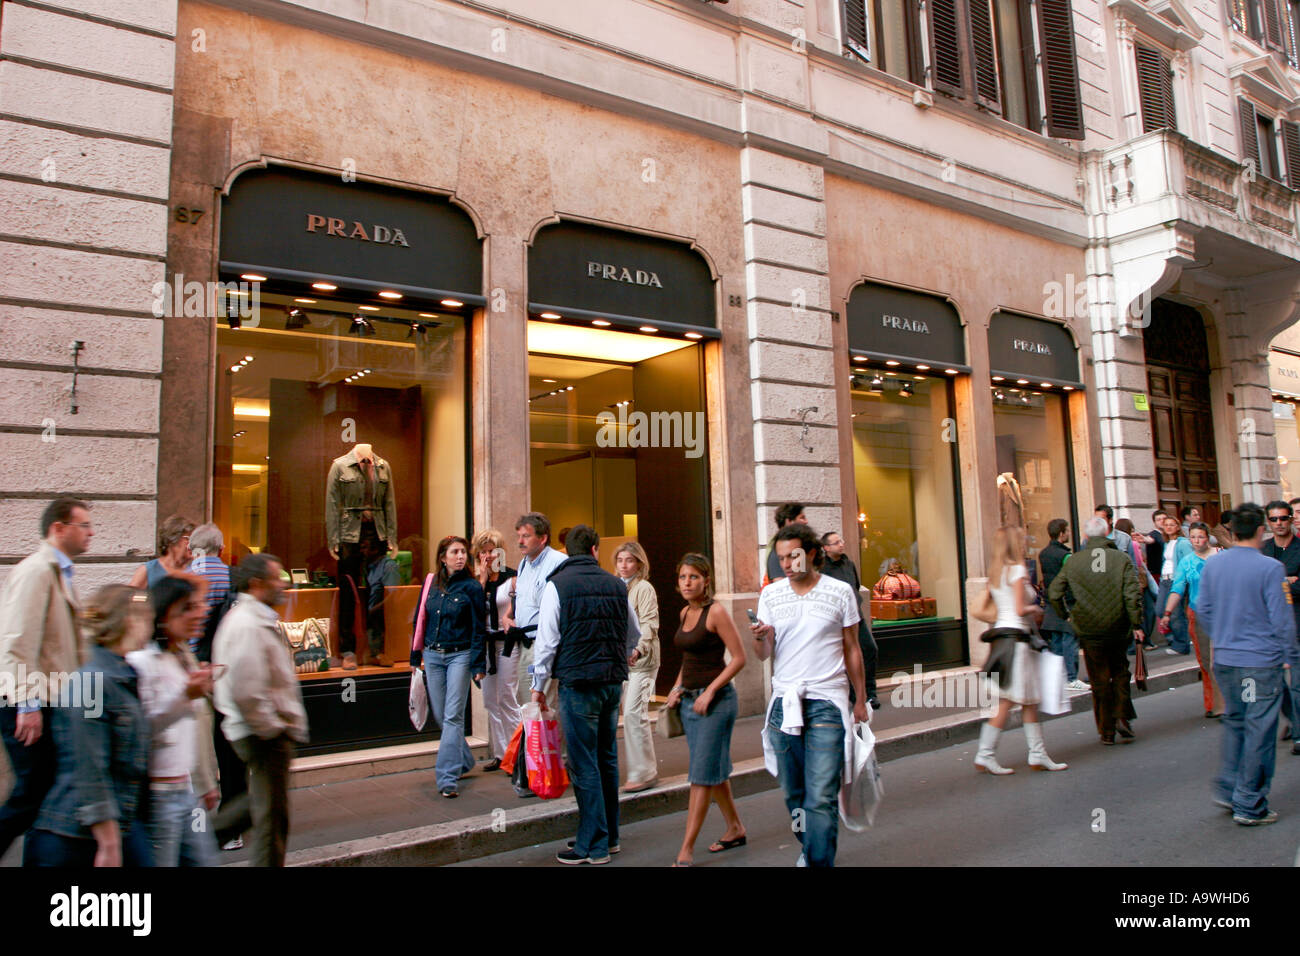 Negozio Prada a Roma Italia Foto stock - Alamy